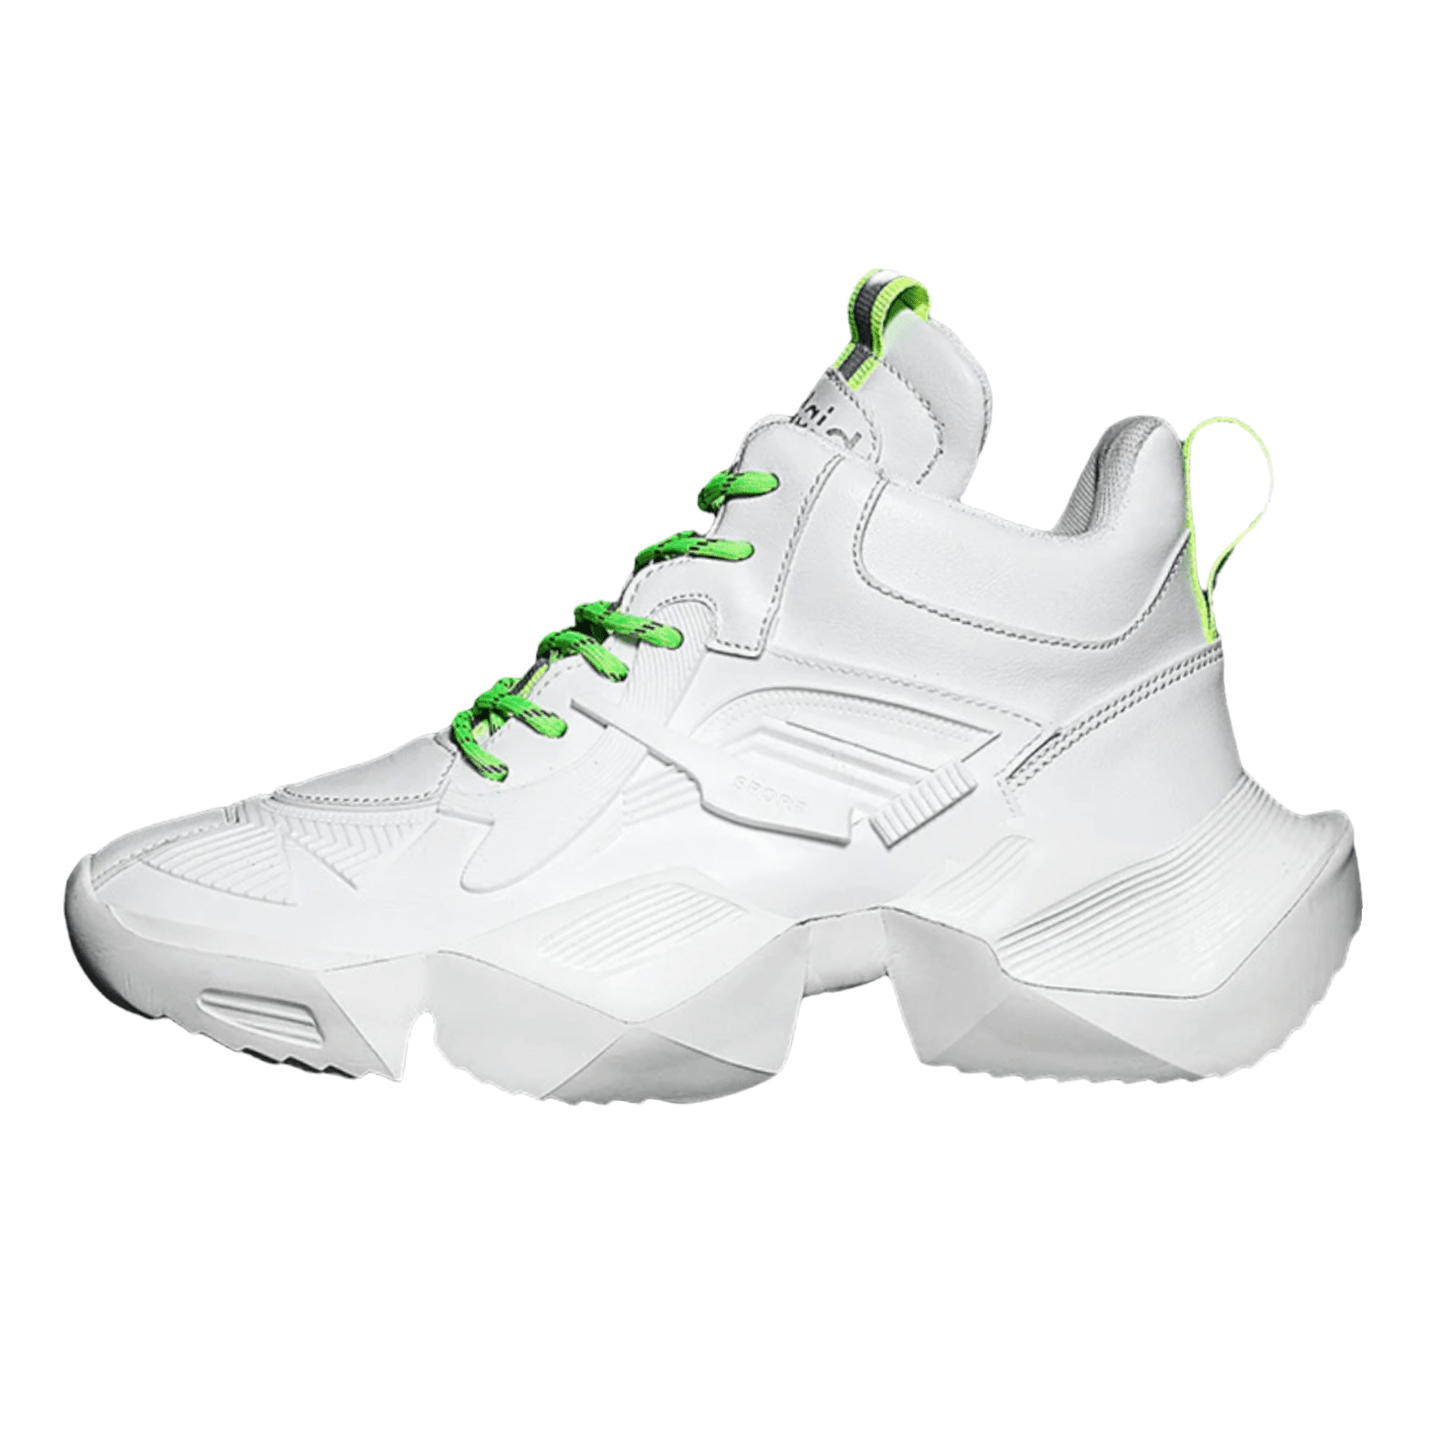 white sneakers aquiles sport flashlander left side